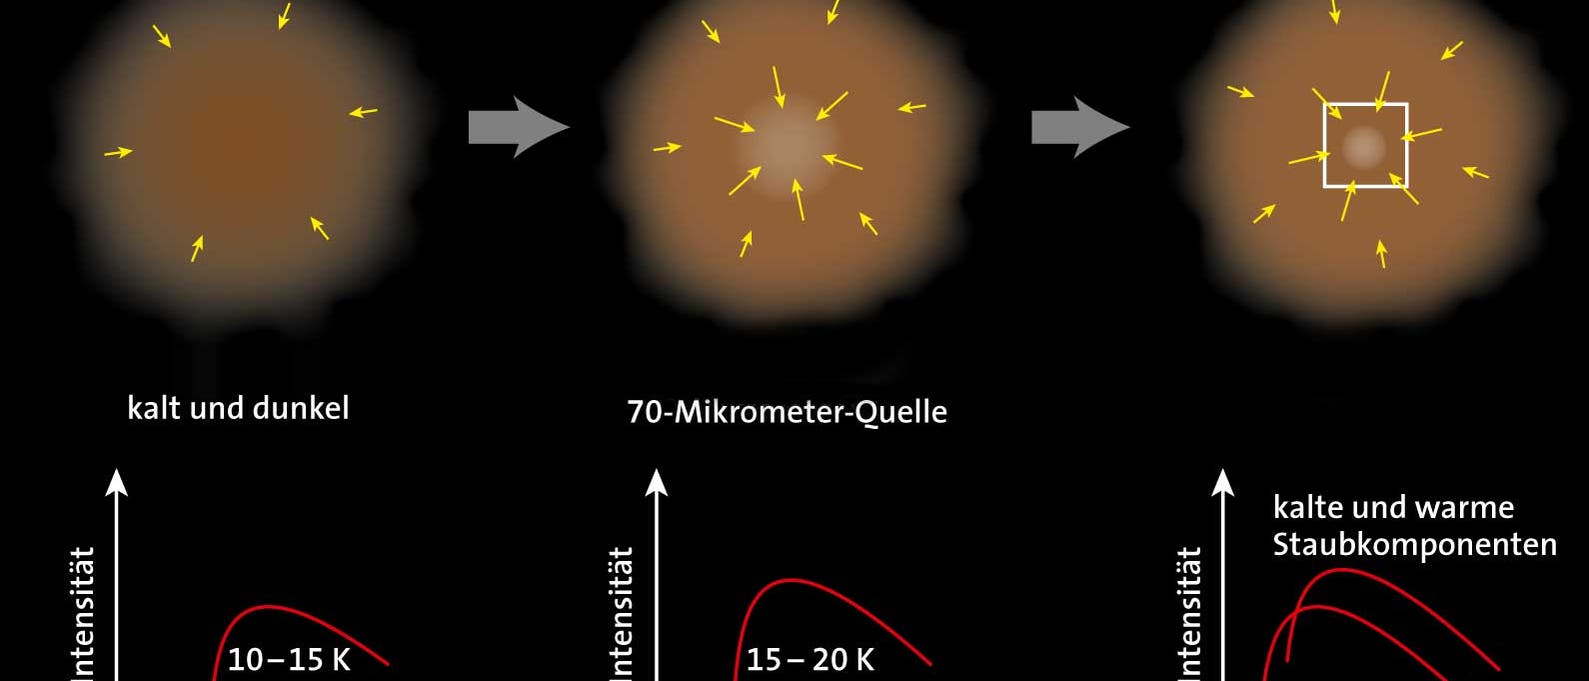 Sternentstehung: Von der interstellaren Materie zum Protostern